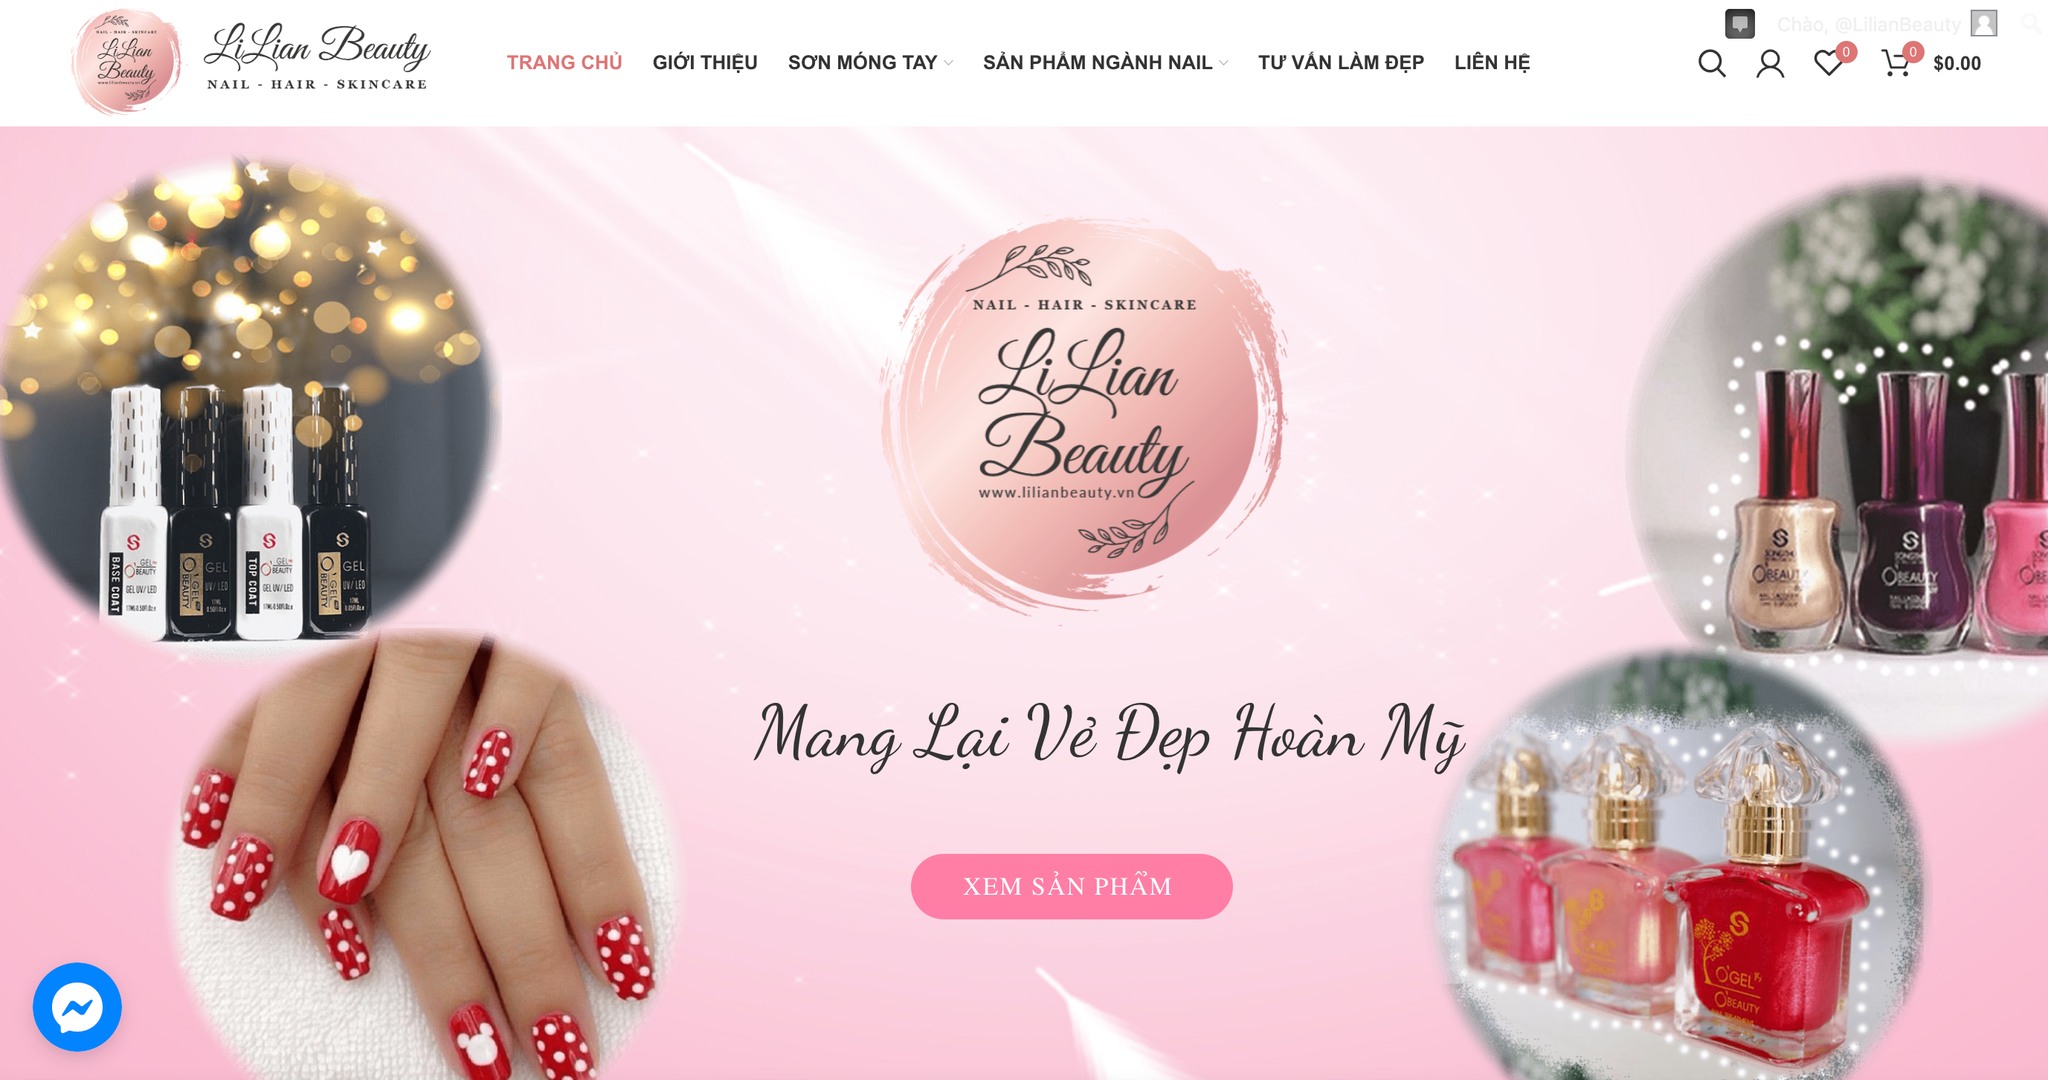 Website chính thức của Lilian Beauty